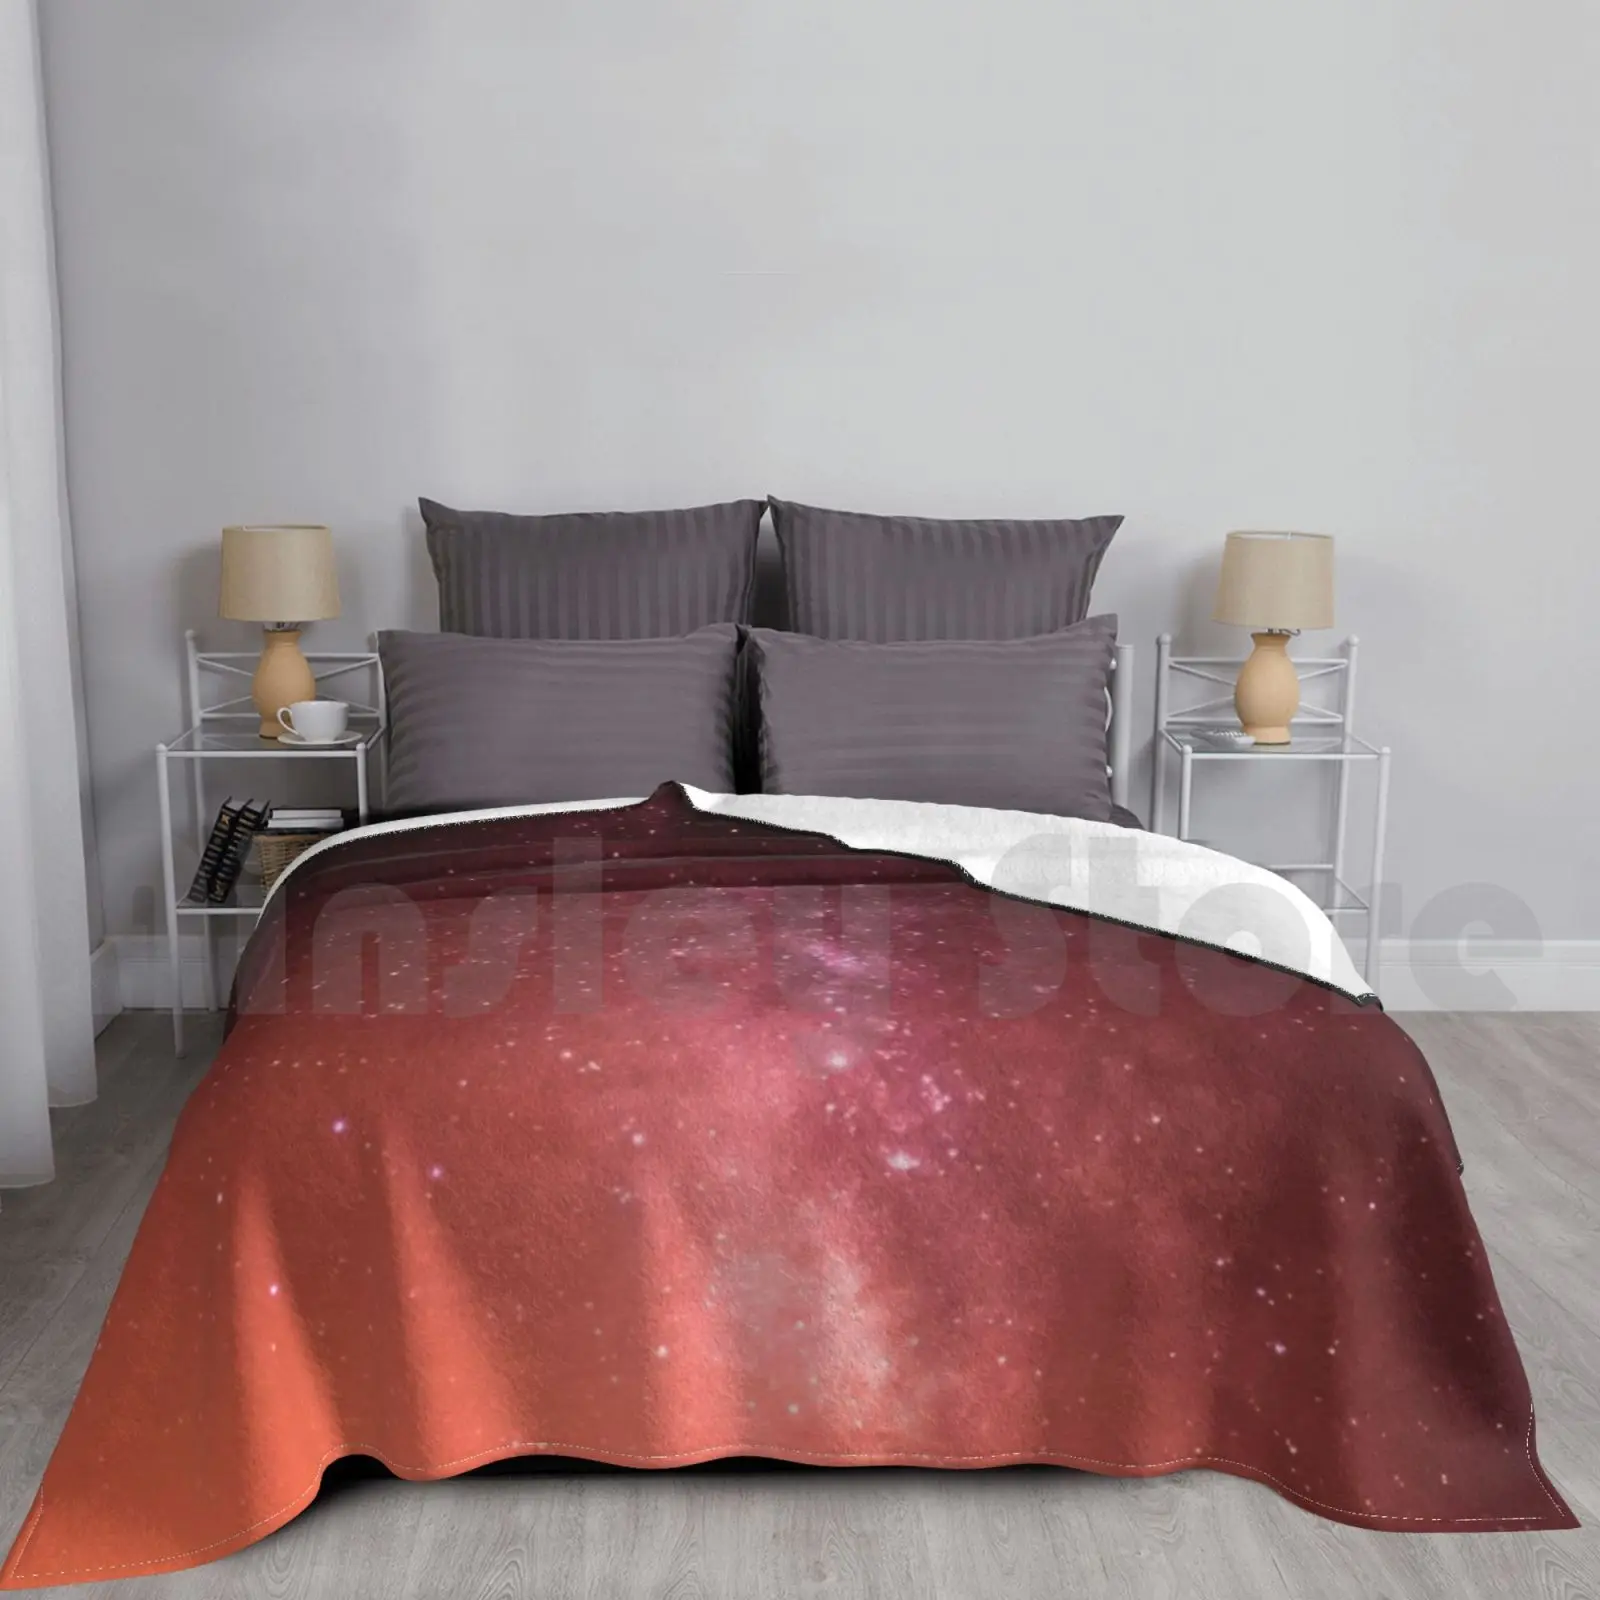 

Универсальное одеяло, супермягкое, теплое, легкое, тонкое, космос, астральная астрофография, космос, галактика, звезды, оранжевый, розовый